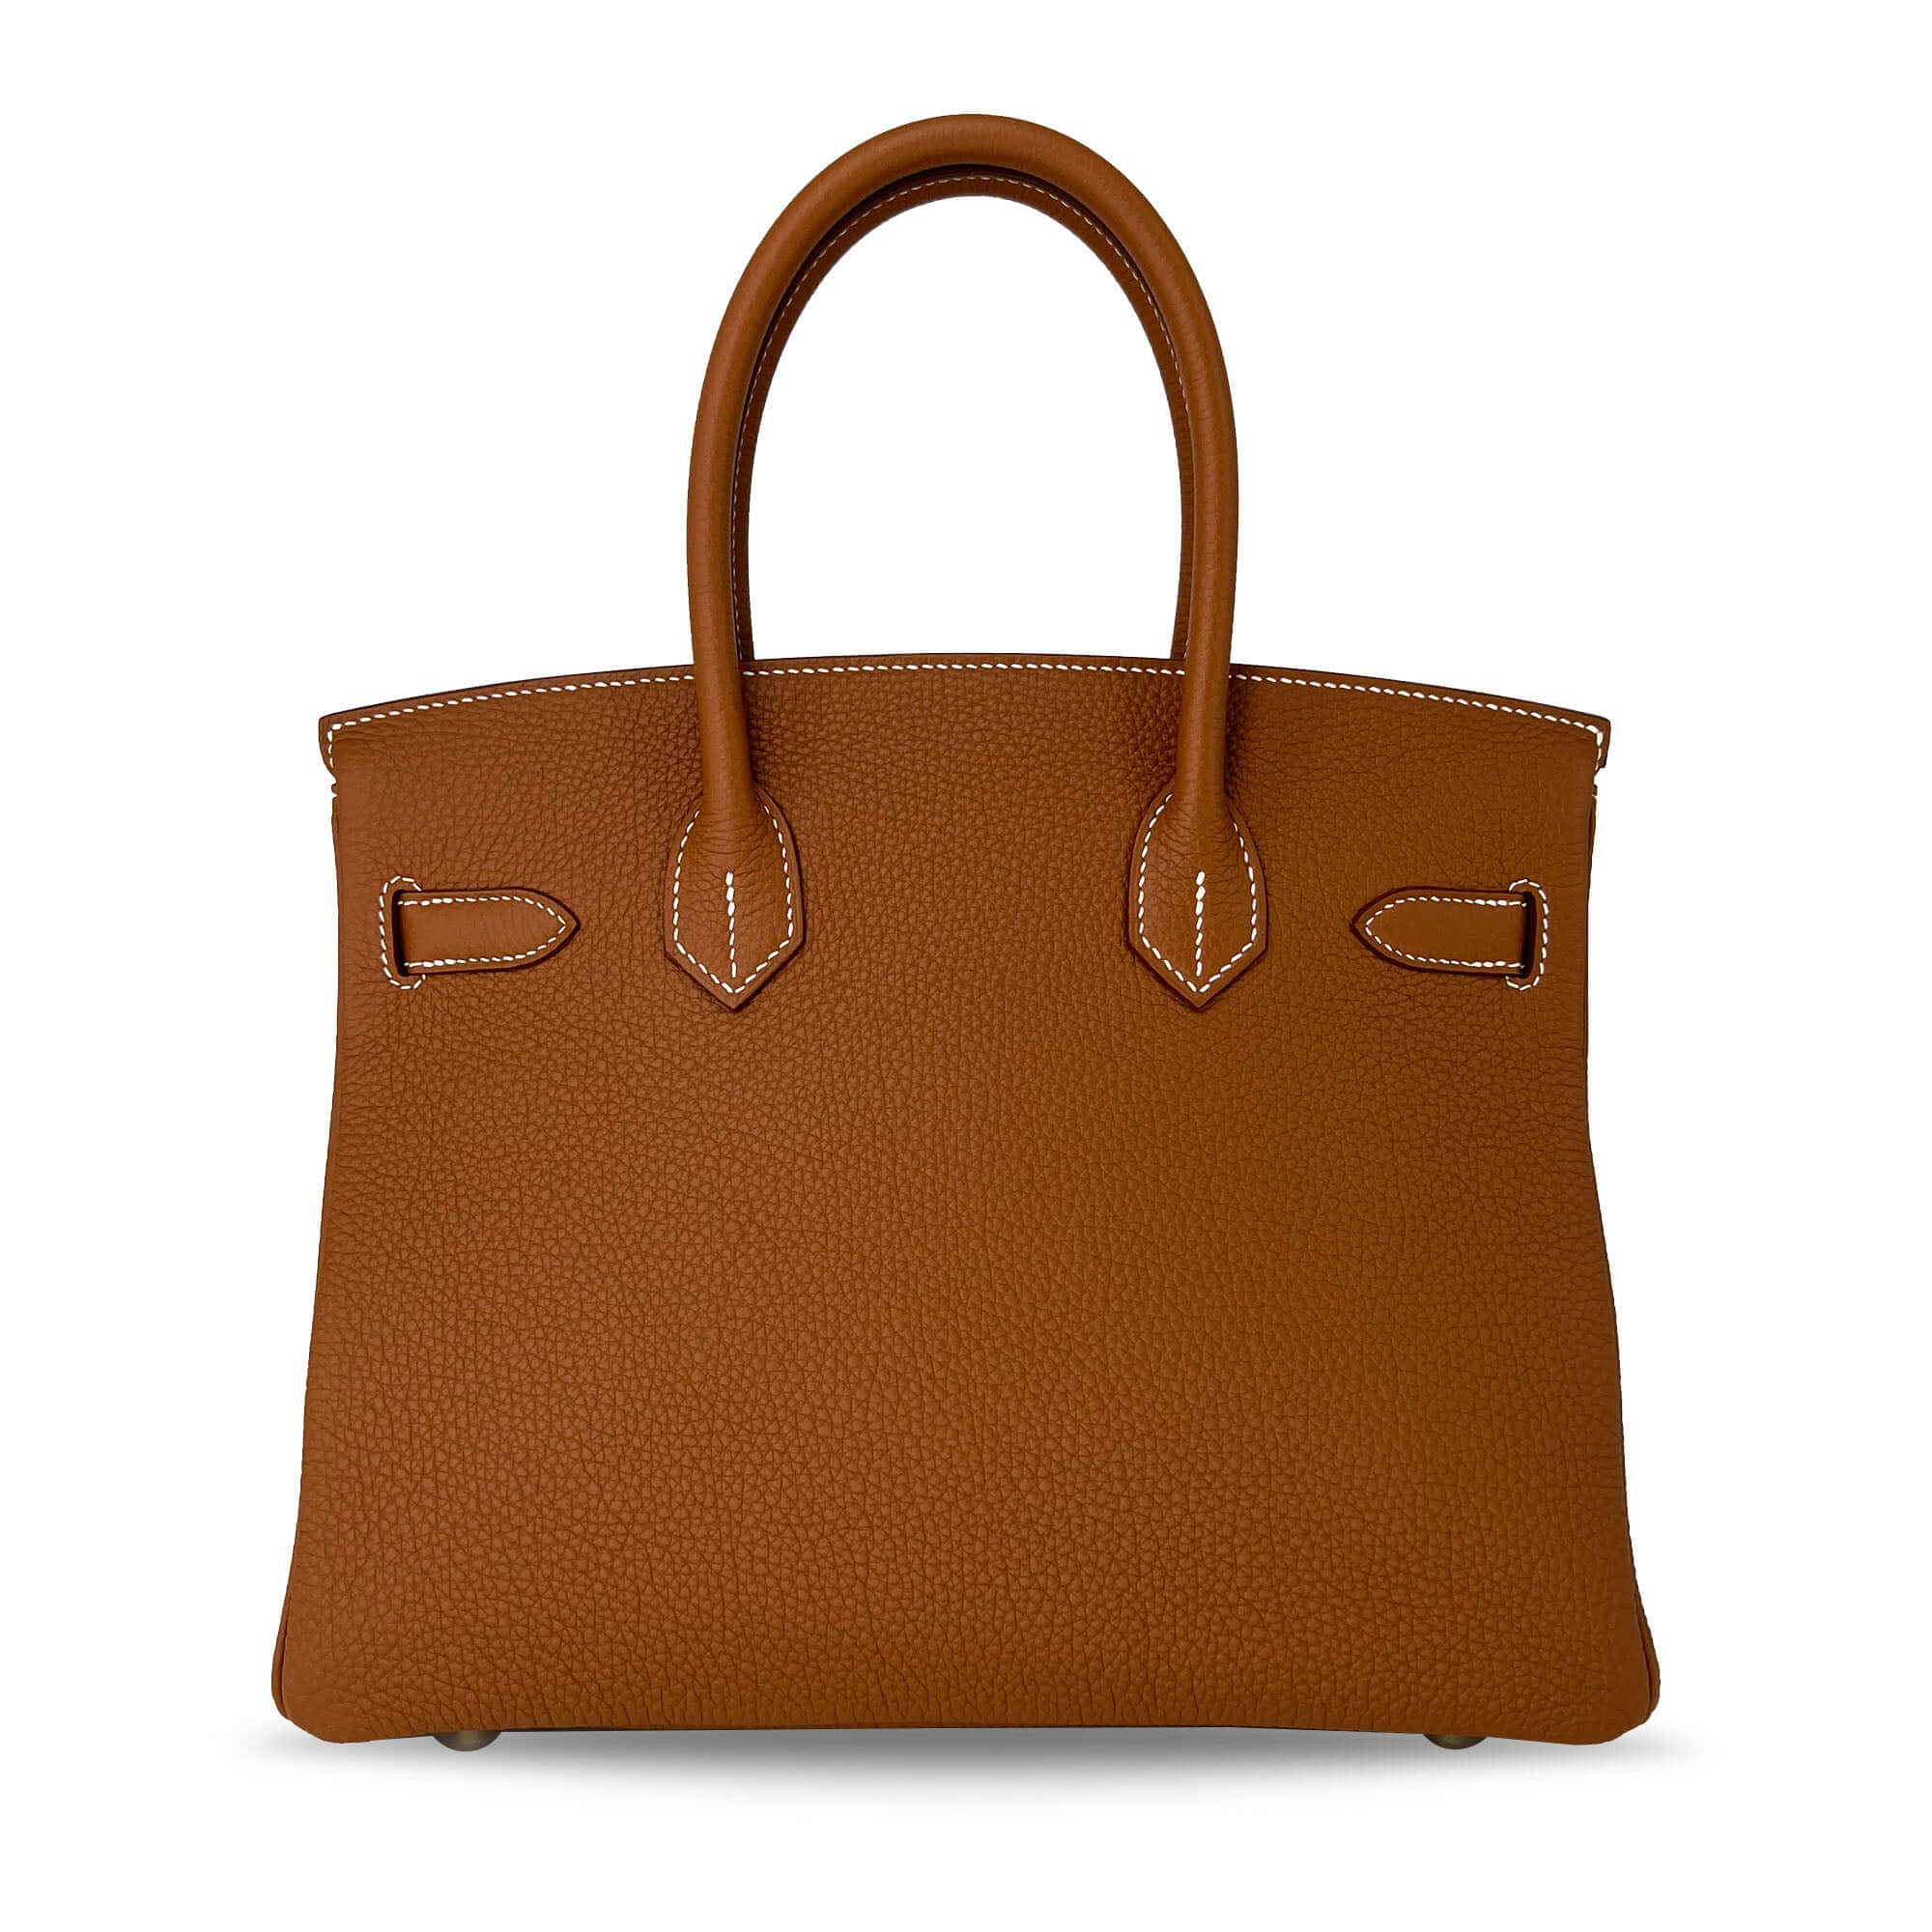 Hermes Birkin Togo B30 GHW designer bag back